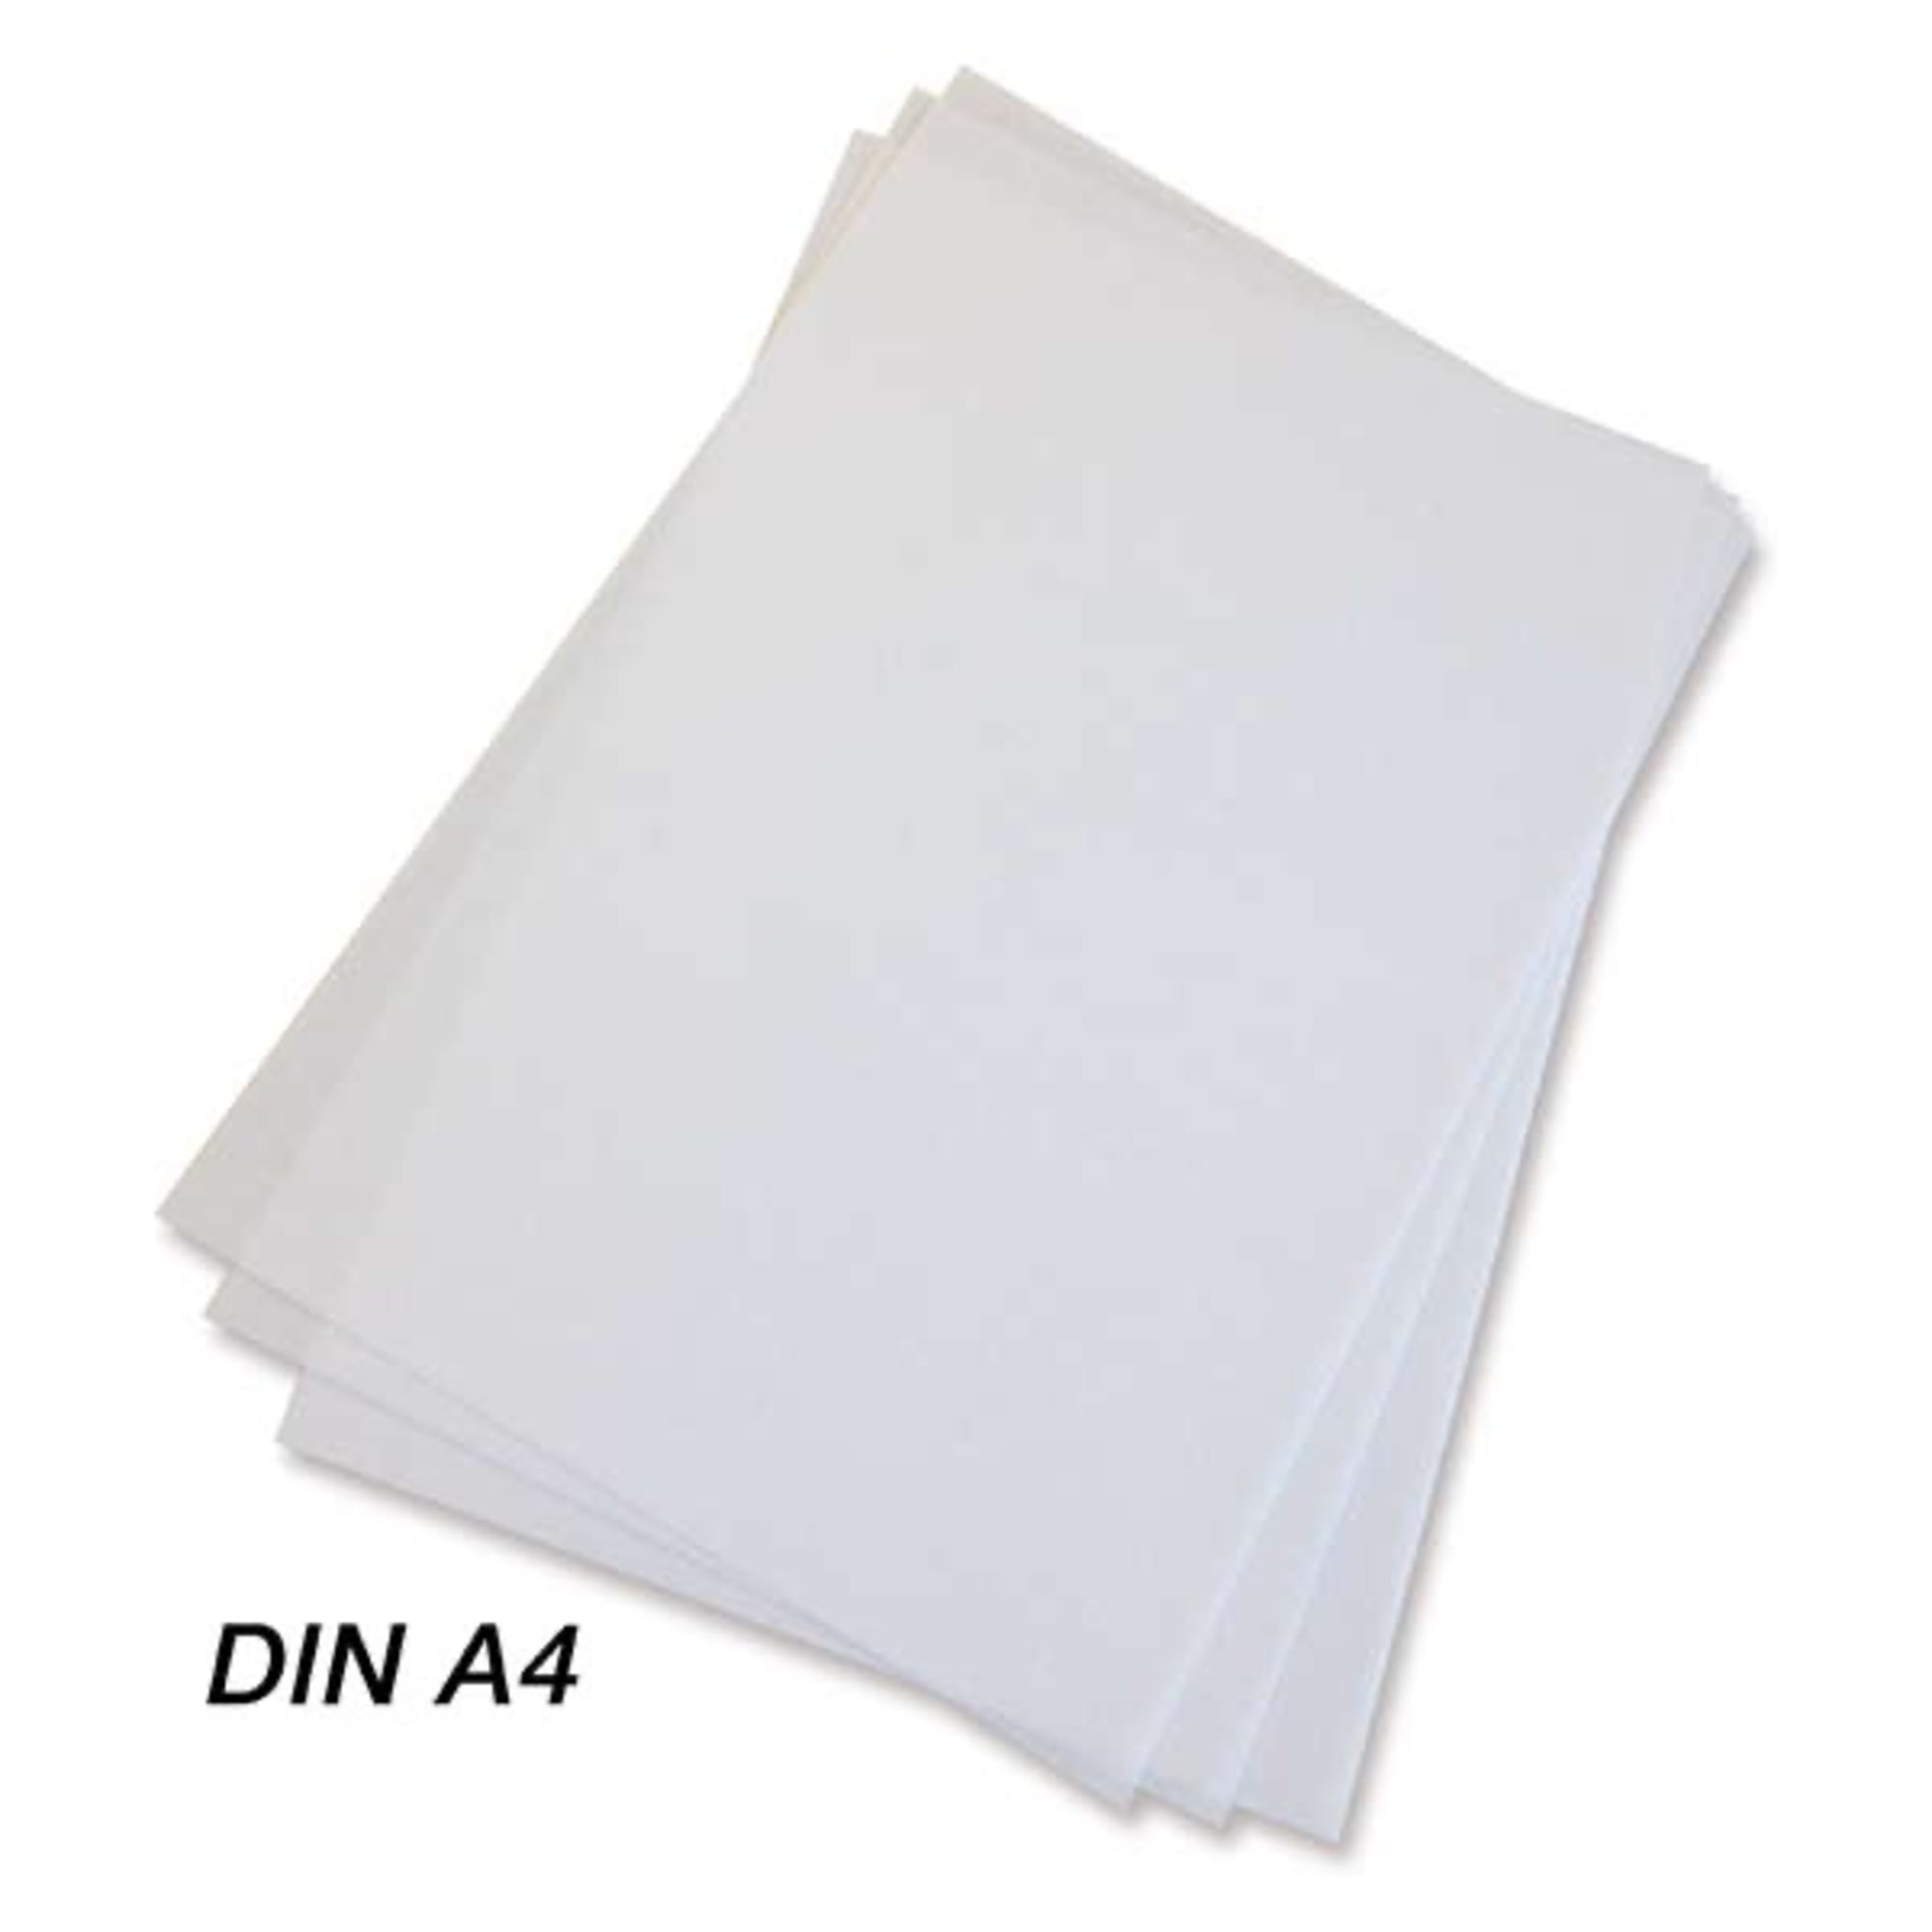 Printable non-woven white, DIN A4, image 2